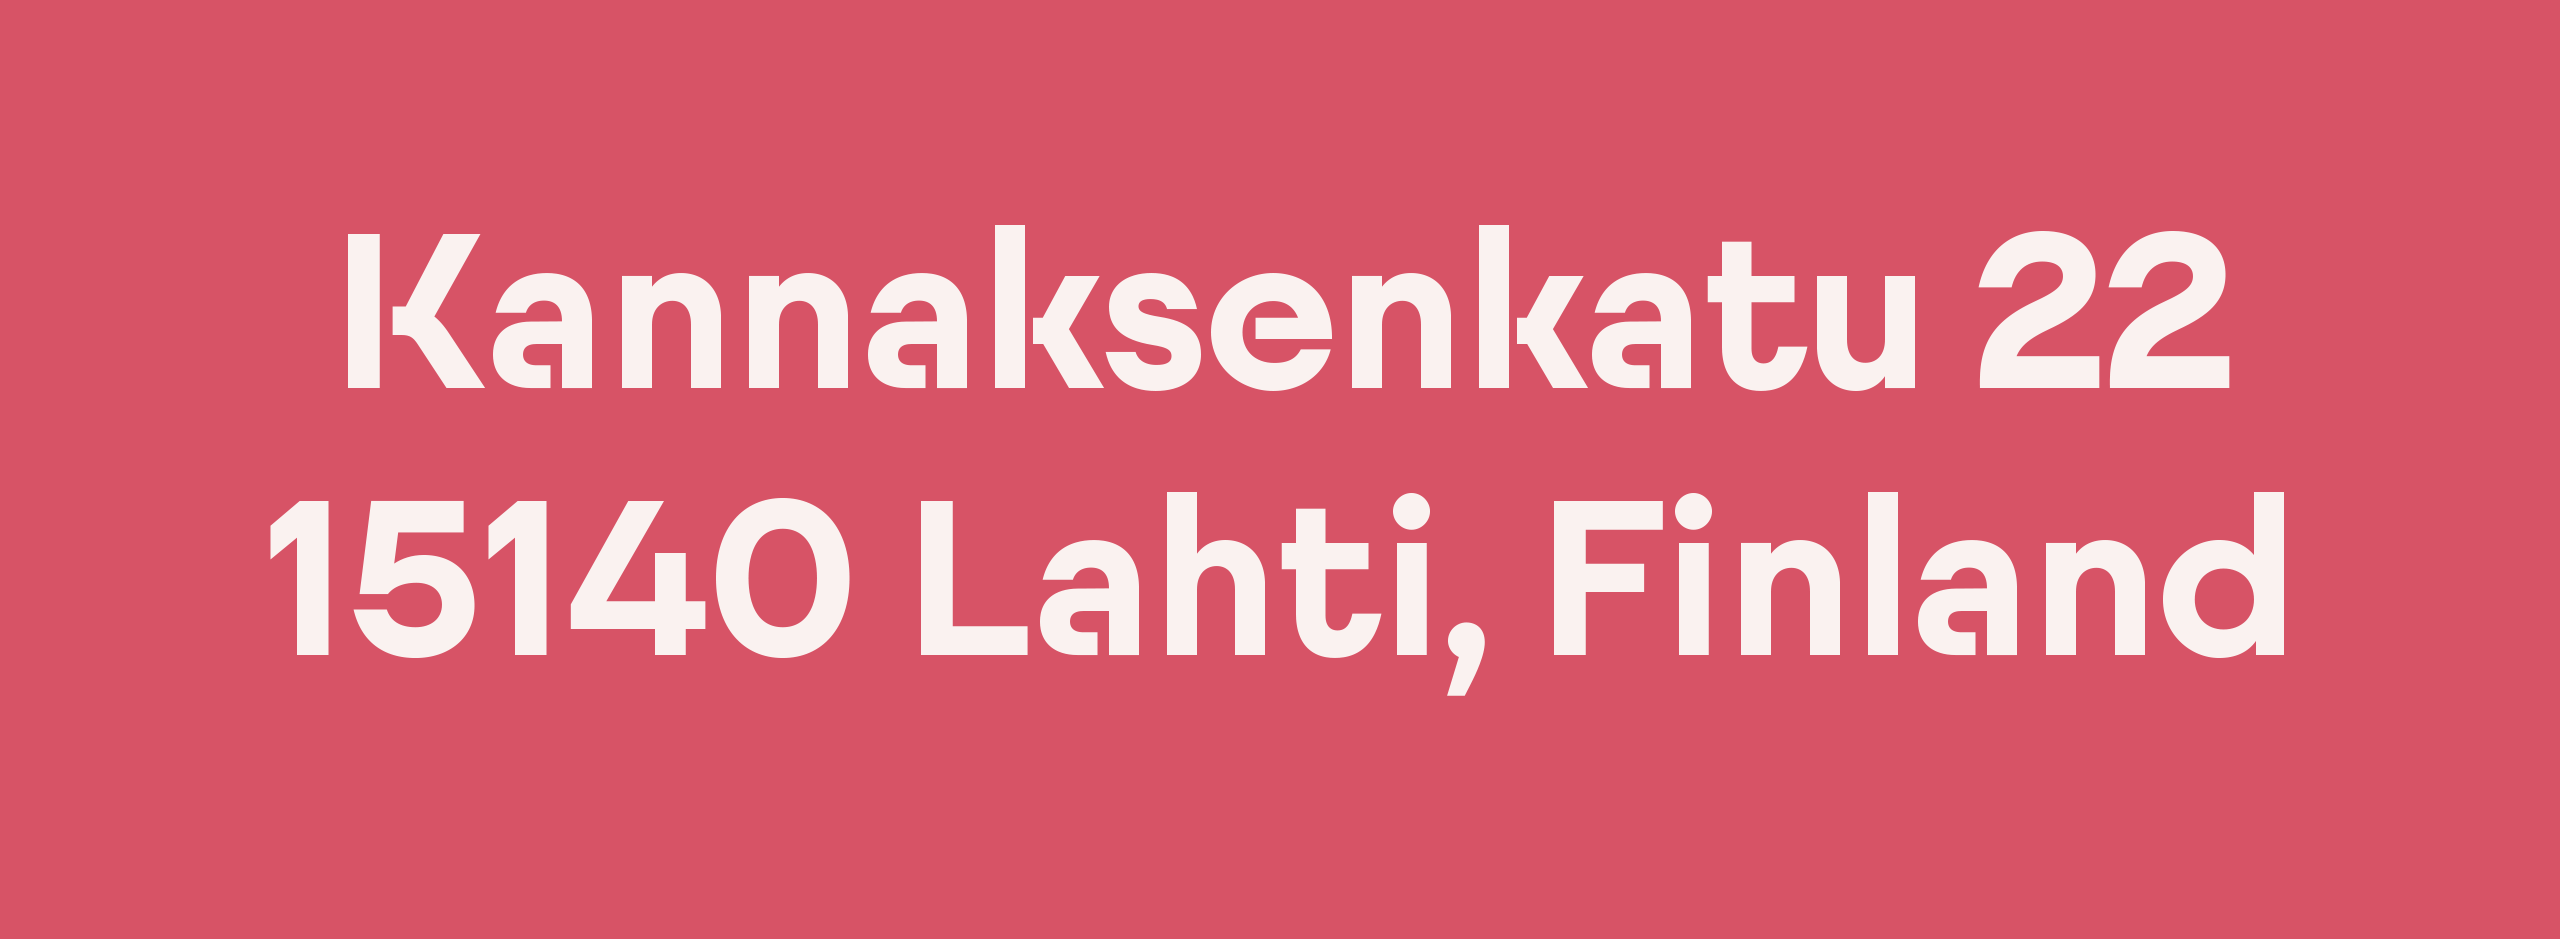 LahtiSans-4-1